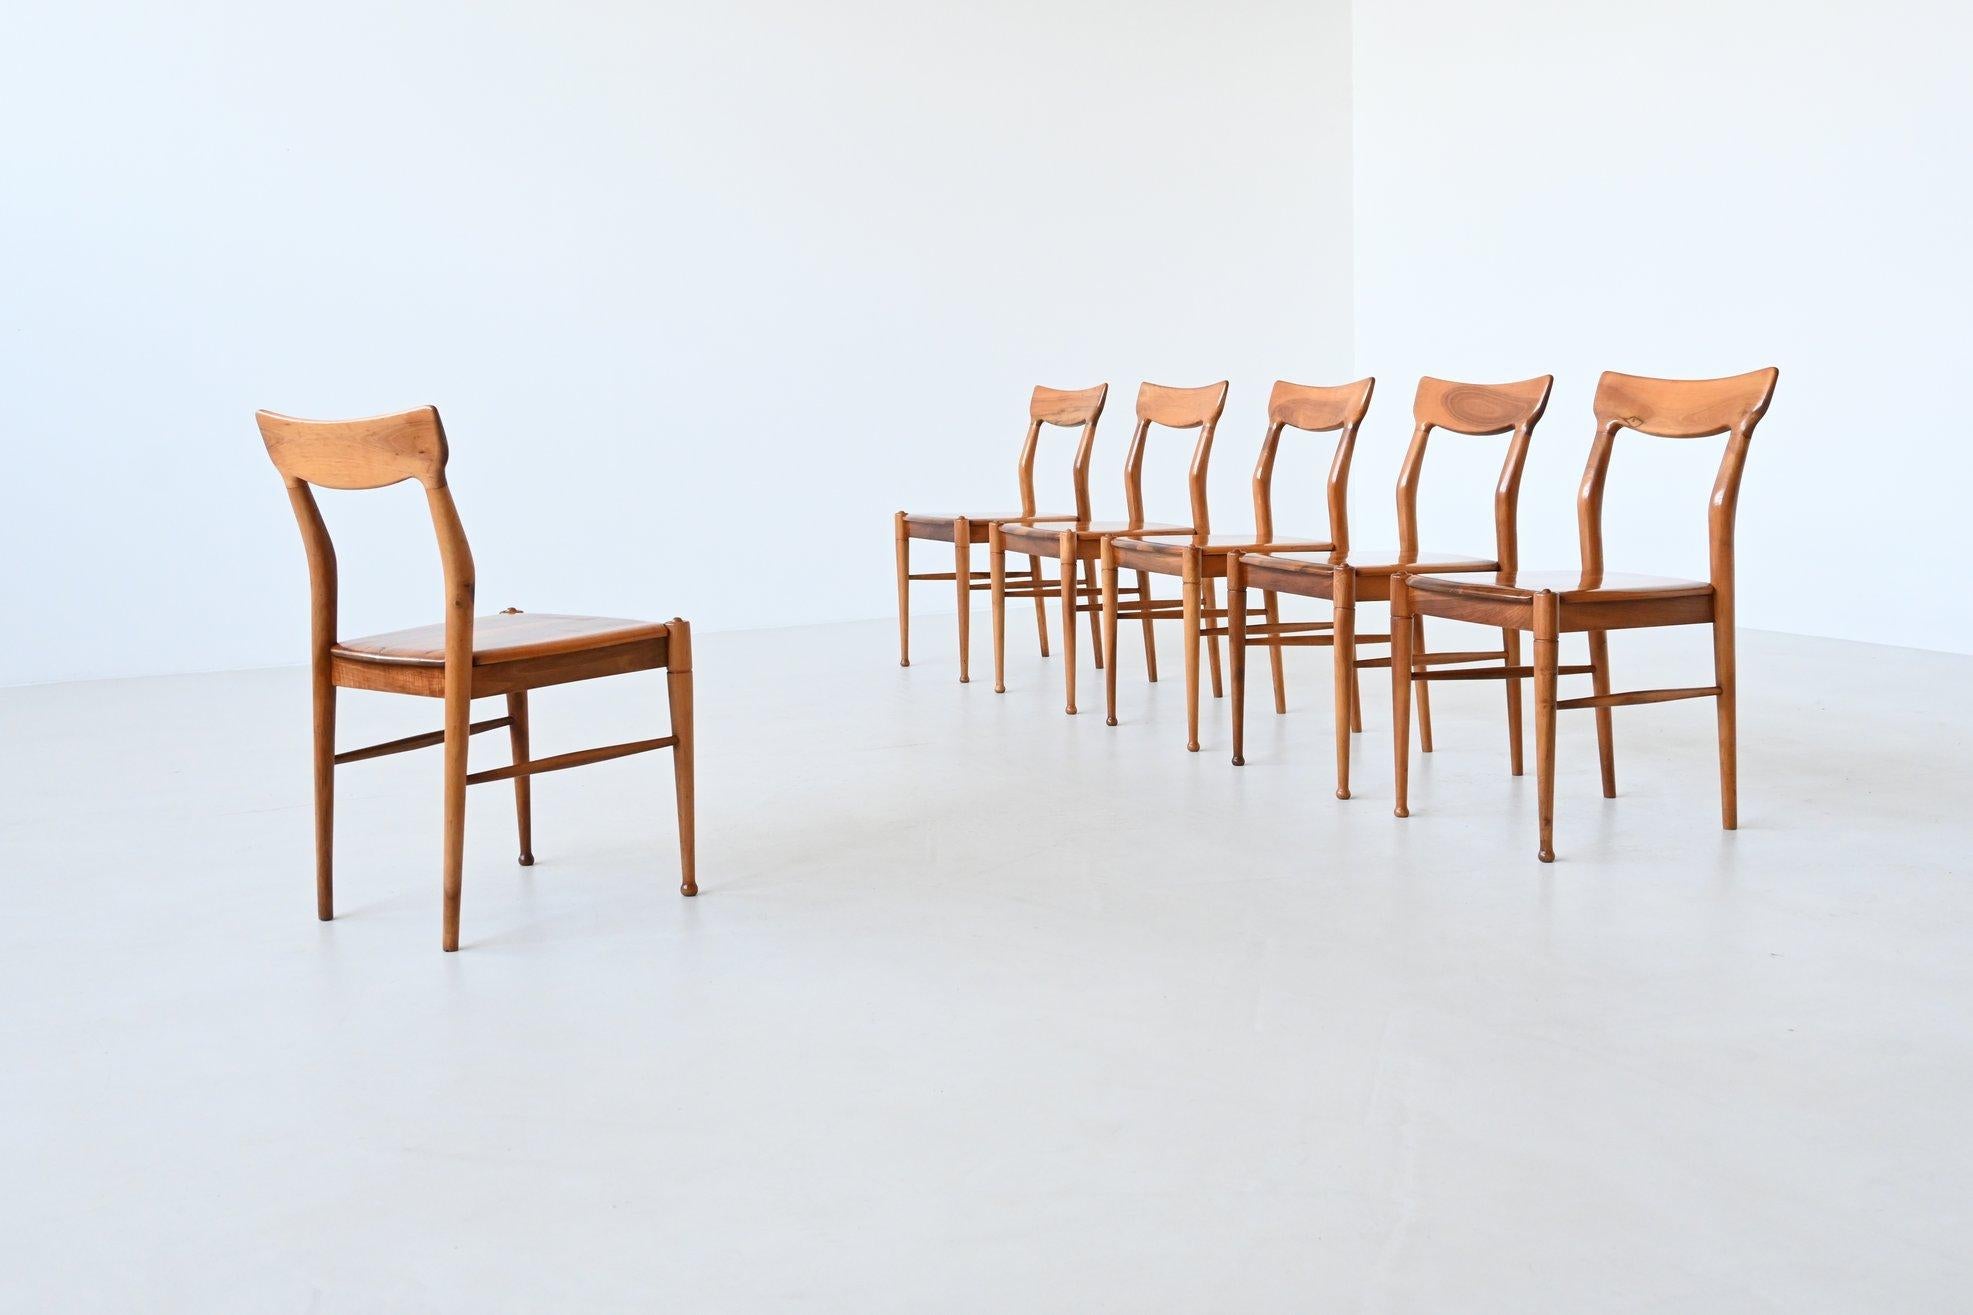 Fantastique et unique ensemble de six chaises de salle à manger conçues et fabriquées par Bosteels Meubelen à Saint-Nicolas, Belgique 1960. Ces chaises aux formes très agréables sont fabriquées en noyer massif magnifiquement grainé. Ils sont